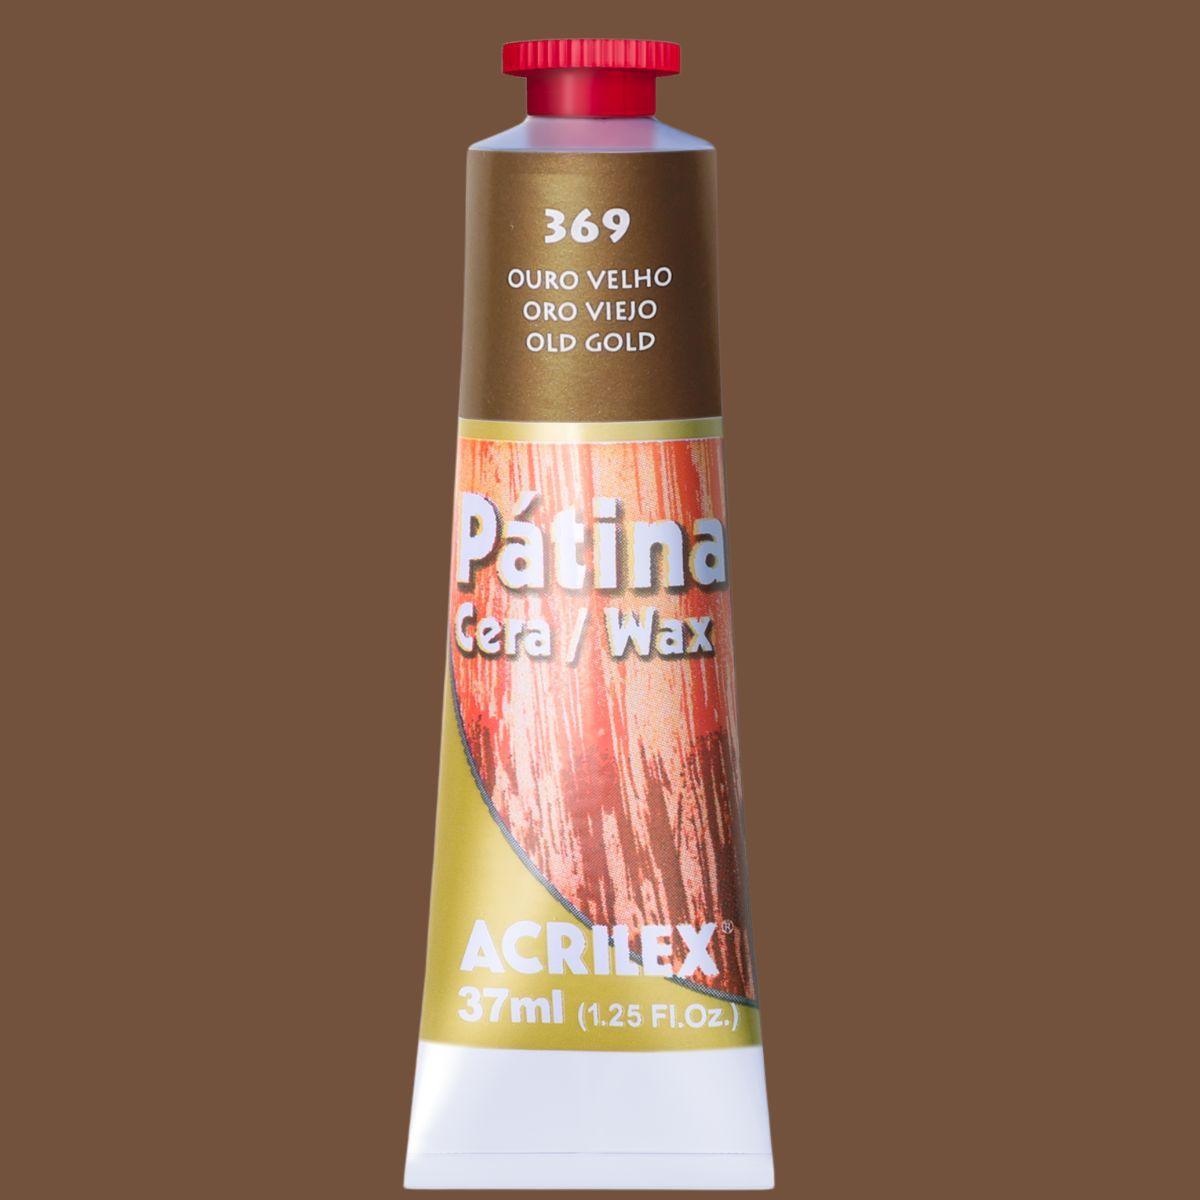 Pátina Acrilex em Cera Natural 37ml Efeito de Envelhecimento - Palácio da Arte